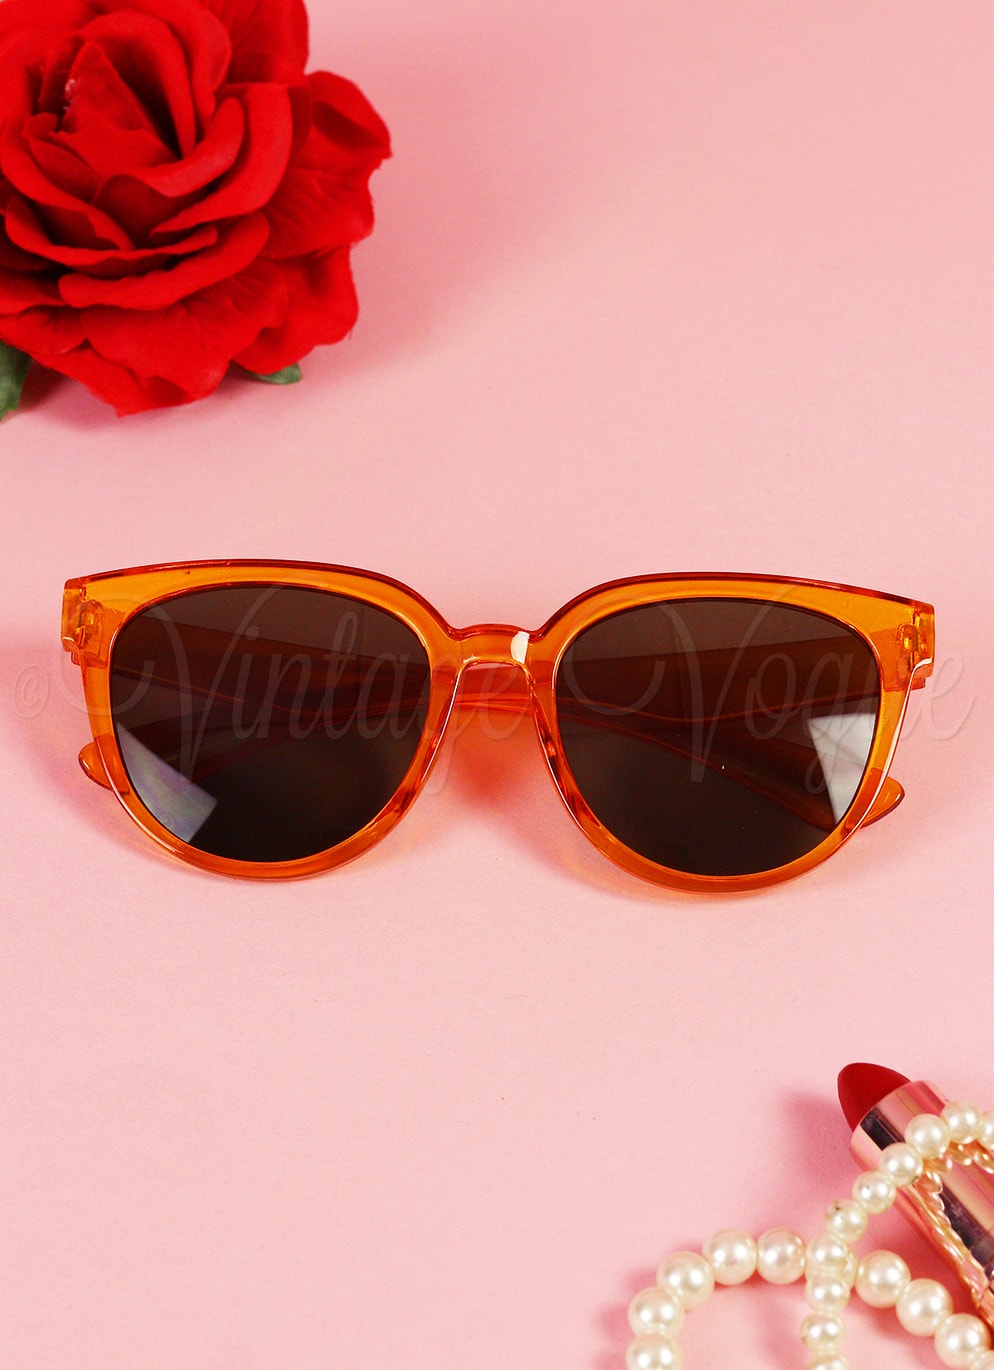 Oh so Retro! Vintage Sonnenbrille Classic Sunnies in Orange